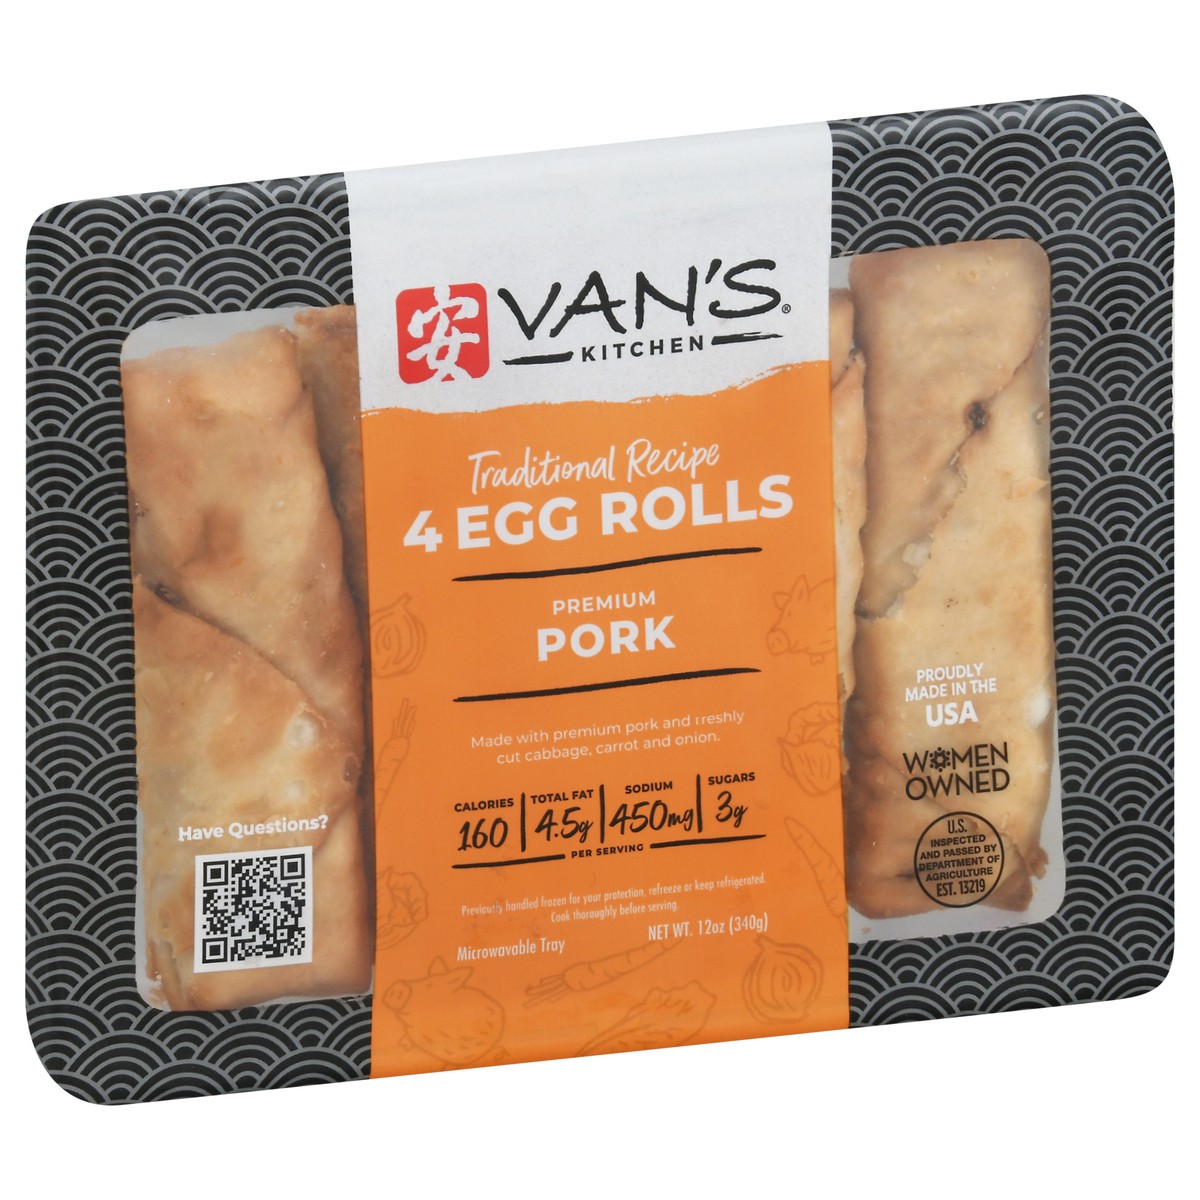 slide 5 of 13, Van's Vans Kitcken Egg Roll Pork 4 Pk 13.75 Oz, 13.75 oz